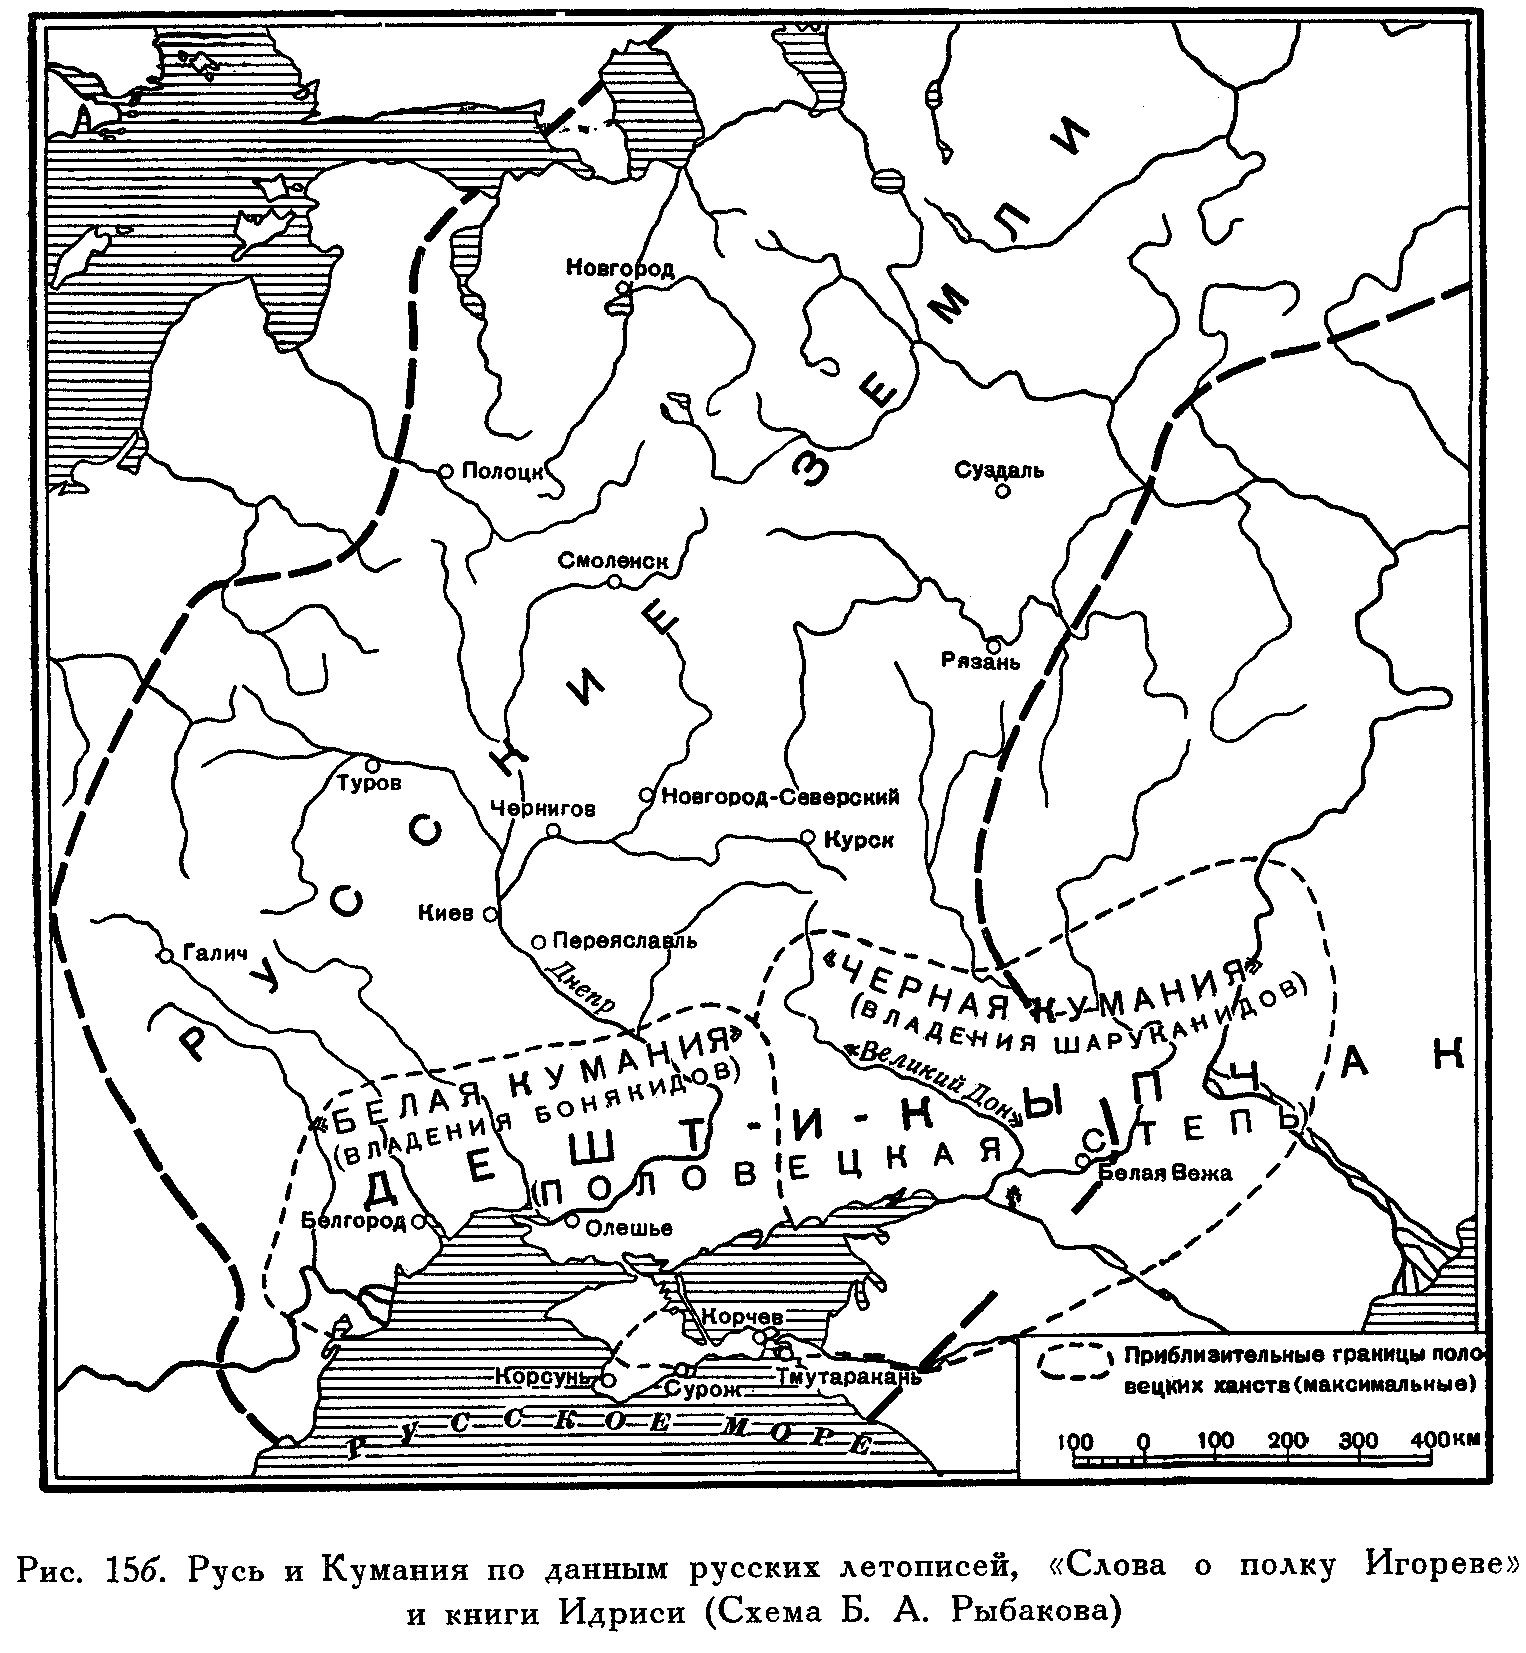 Поход князя Игоря Святославича 1185 карта